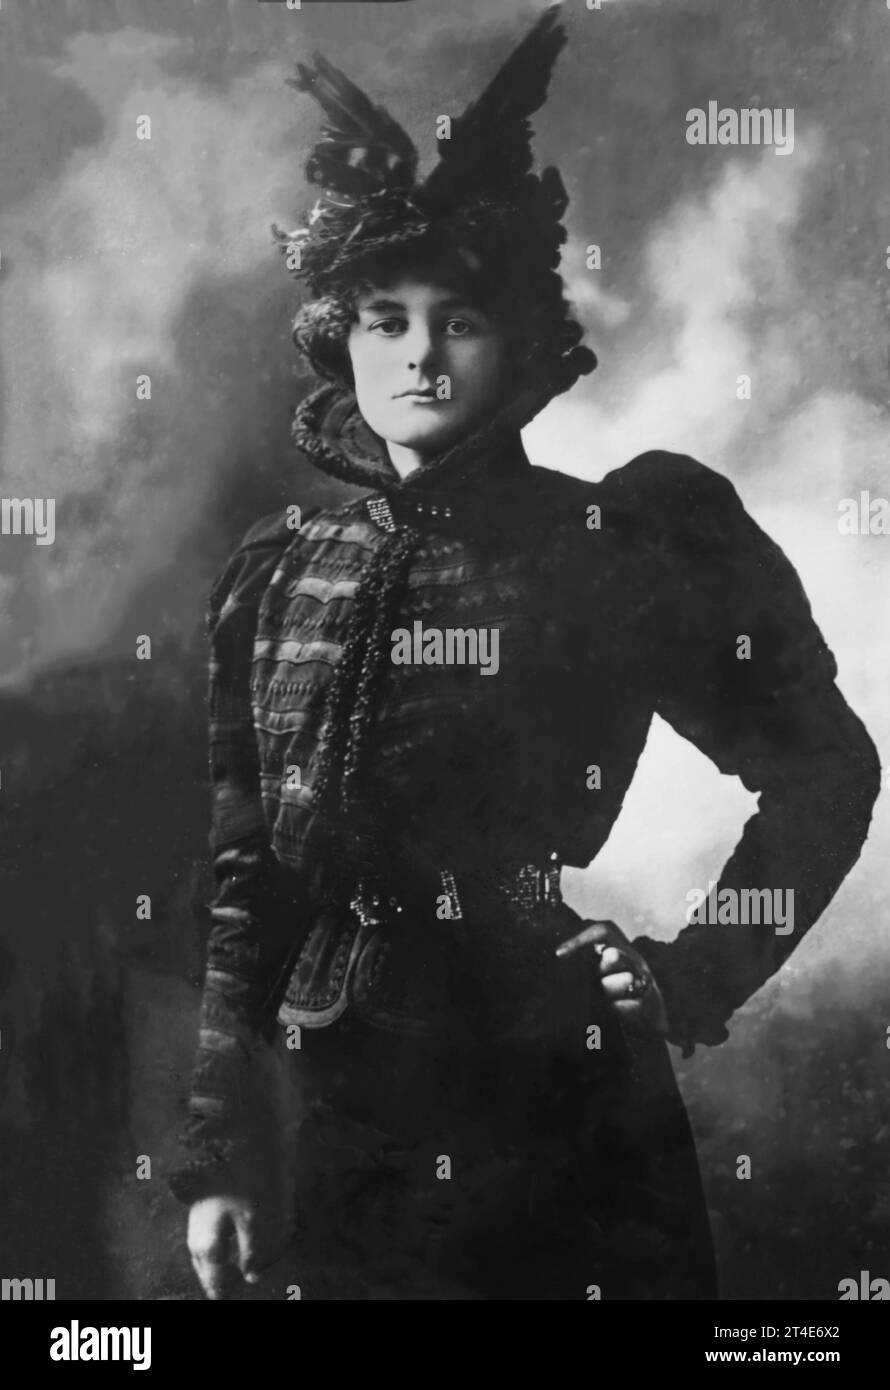 Maud Gonne. Portrait de la révolutionnaire républicaine irlandaise, suffragette et actrice, Maud Gonne MacBride (1866-1953) par bain News Service Banque D'Images